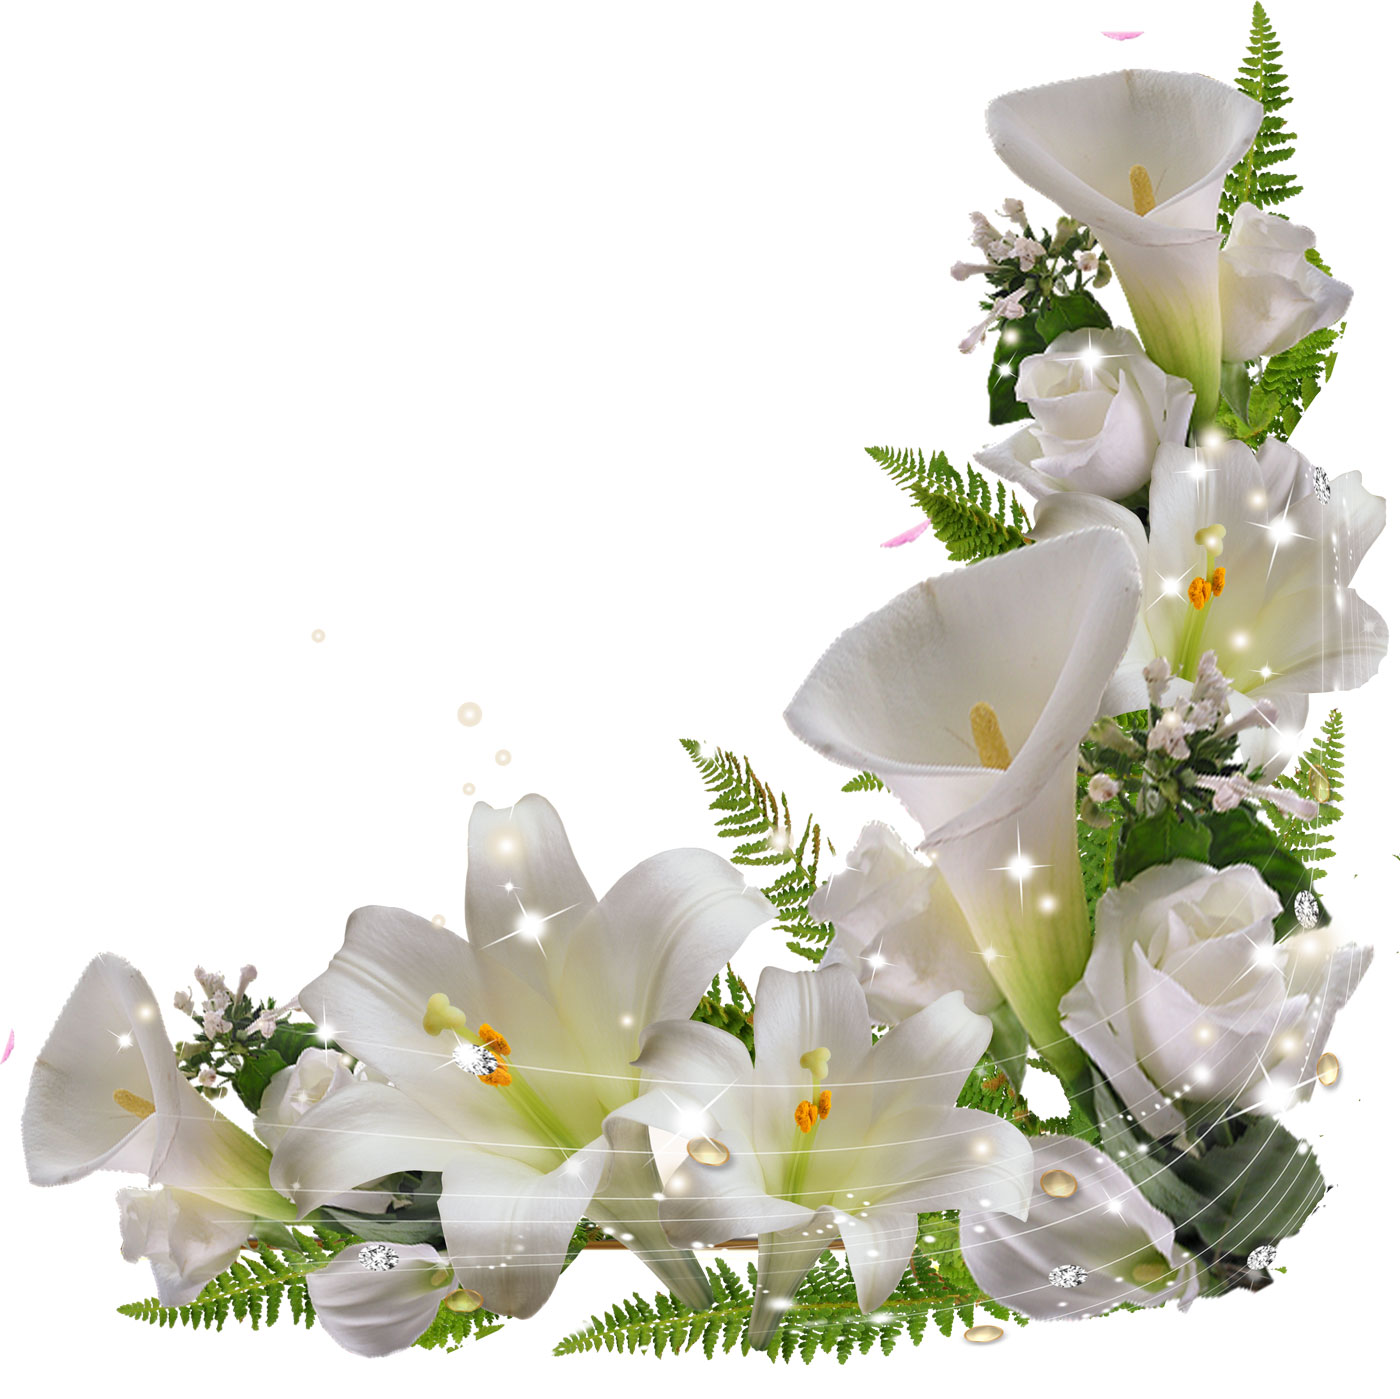 百合 ゆり の花の写真 画像 フリー素材 No 324 白ゆり 葉 光源